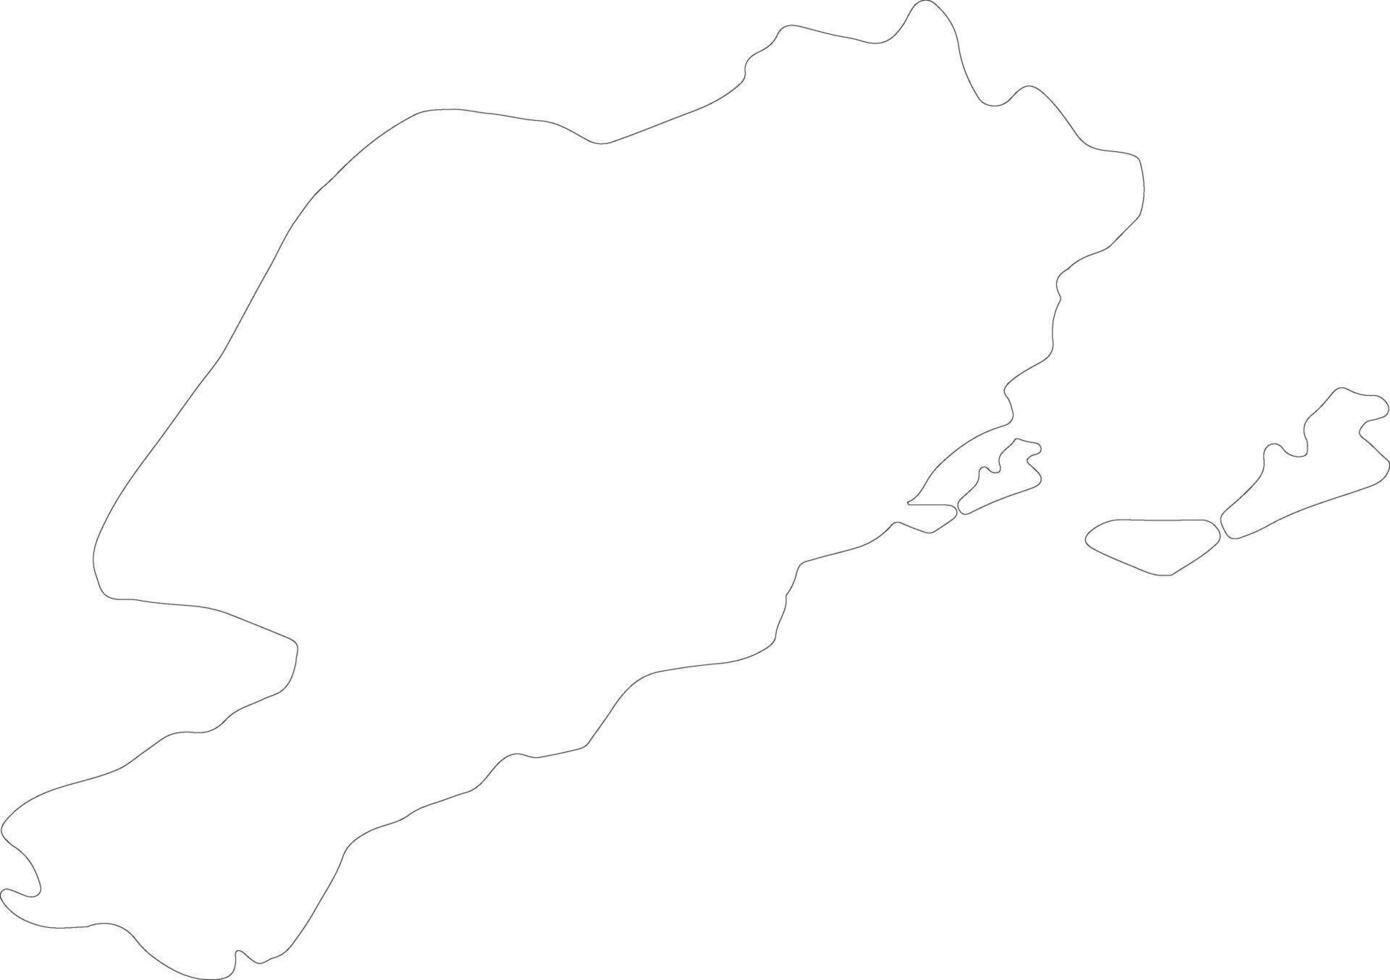 sfax Tunesië schets kaart vector